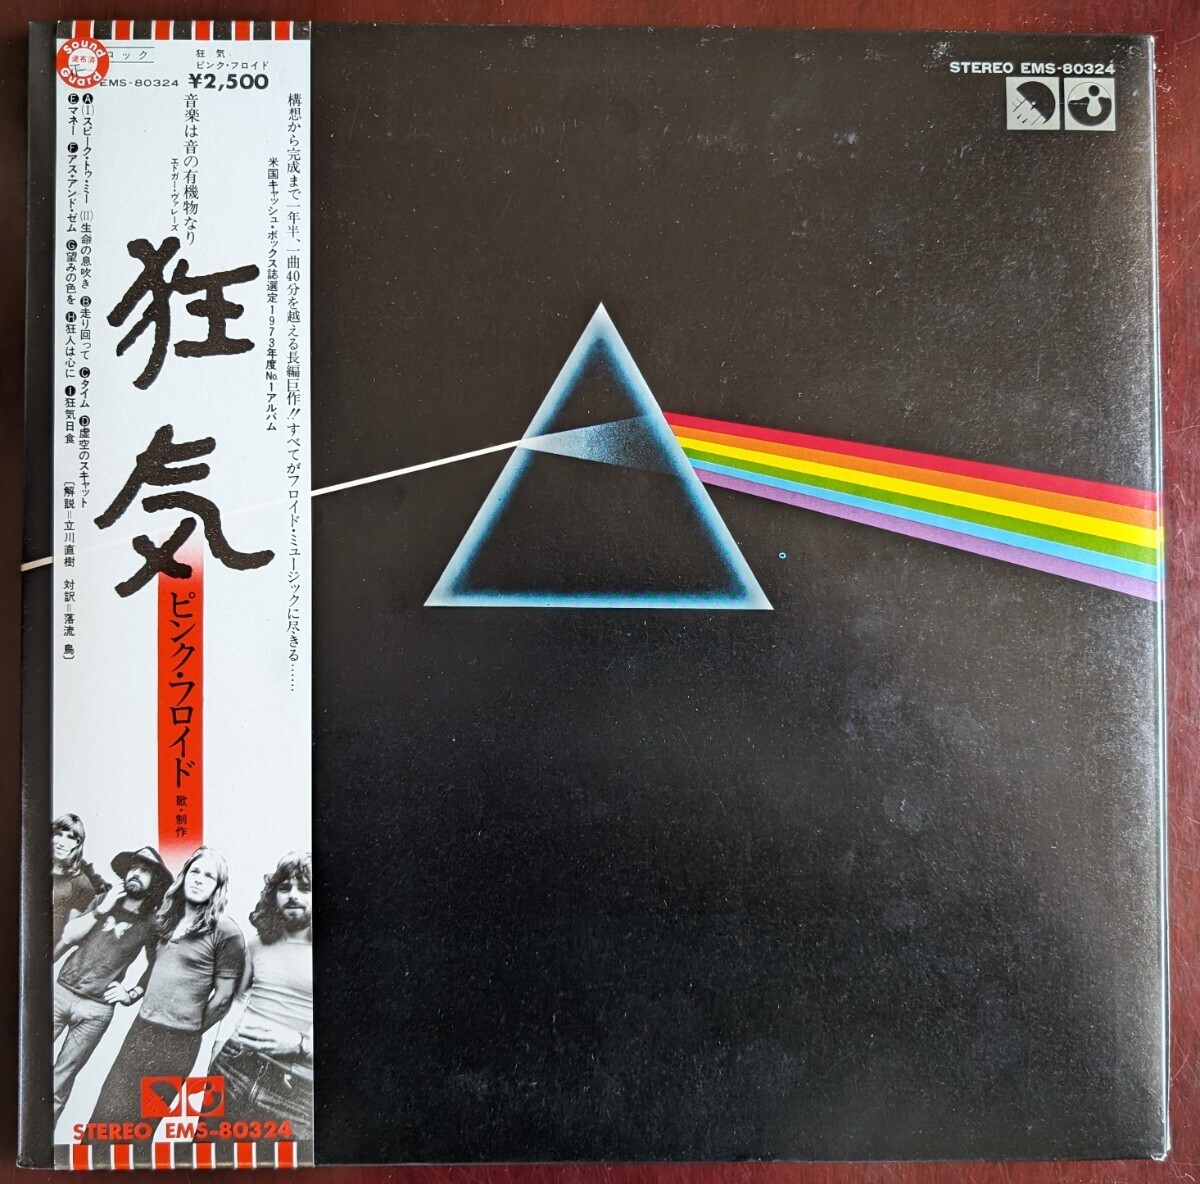 Pink Floyd ピンク フロイド / The Dark Side Of The Moon 狂気 国内盤 LP 帯・ブックレット・ポストカード・ポスター×2付 (EMS-80324)の画像1